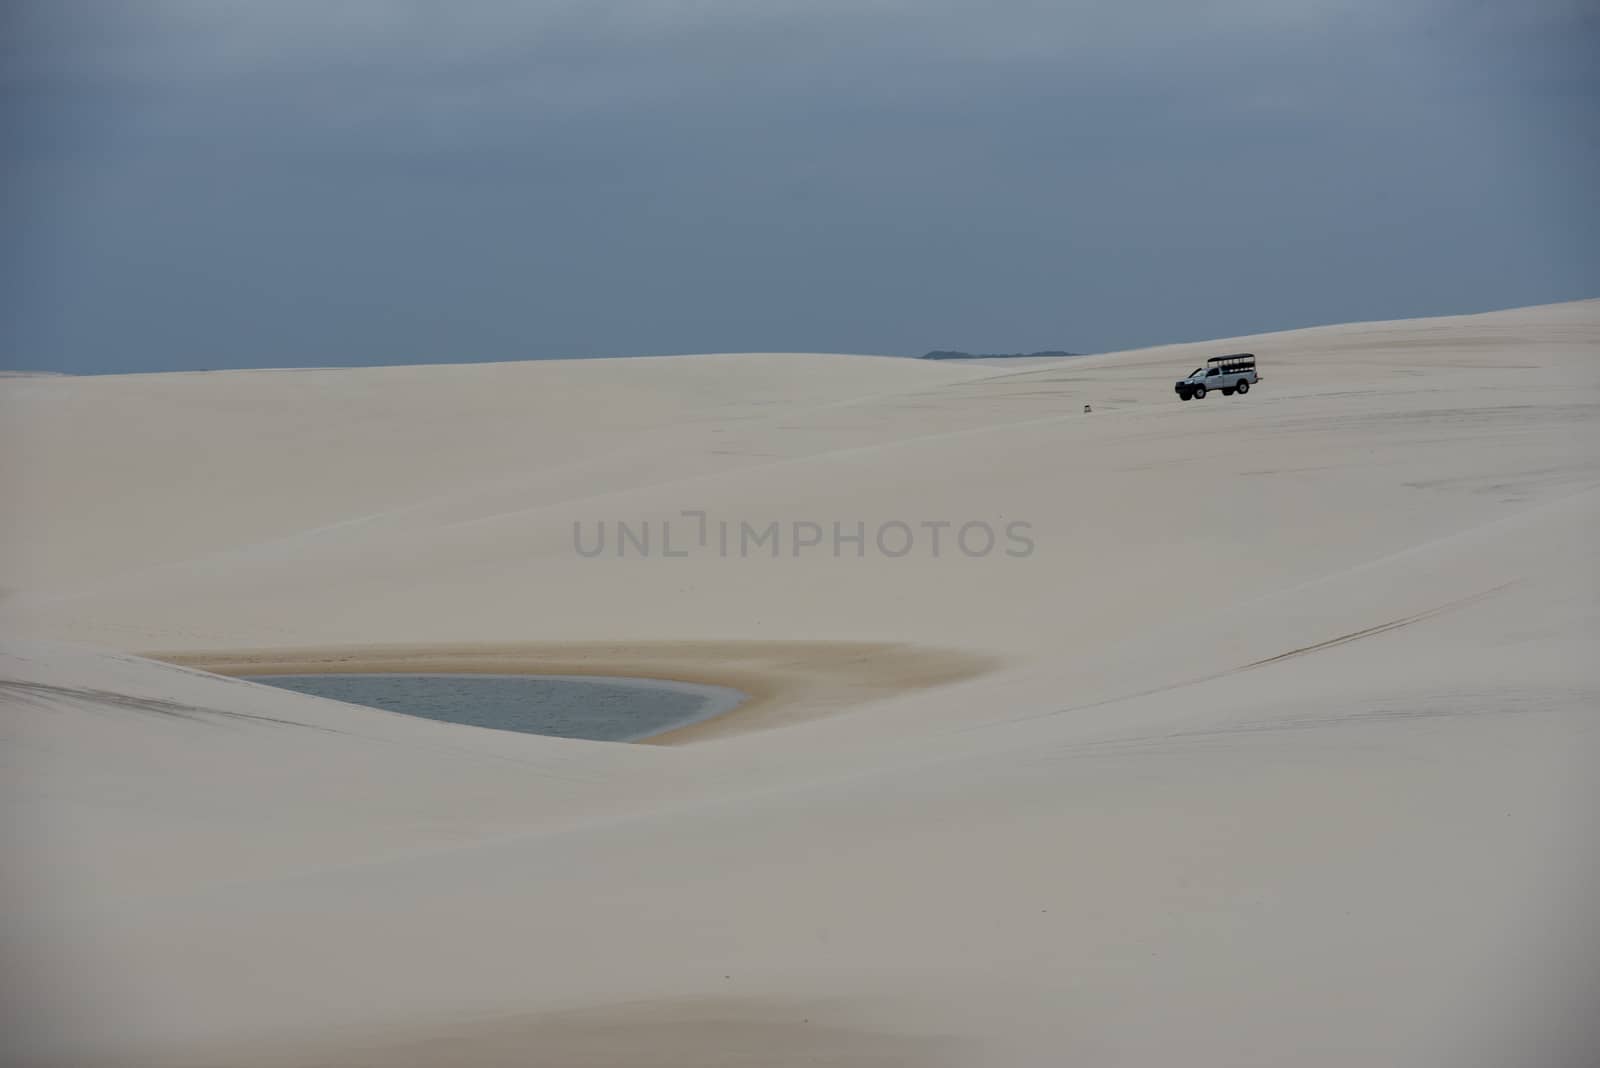 Atins, Brazil - 12 January 2019: tourist truck on the dunes at Lencois Maranhenese National Park in Brazil